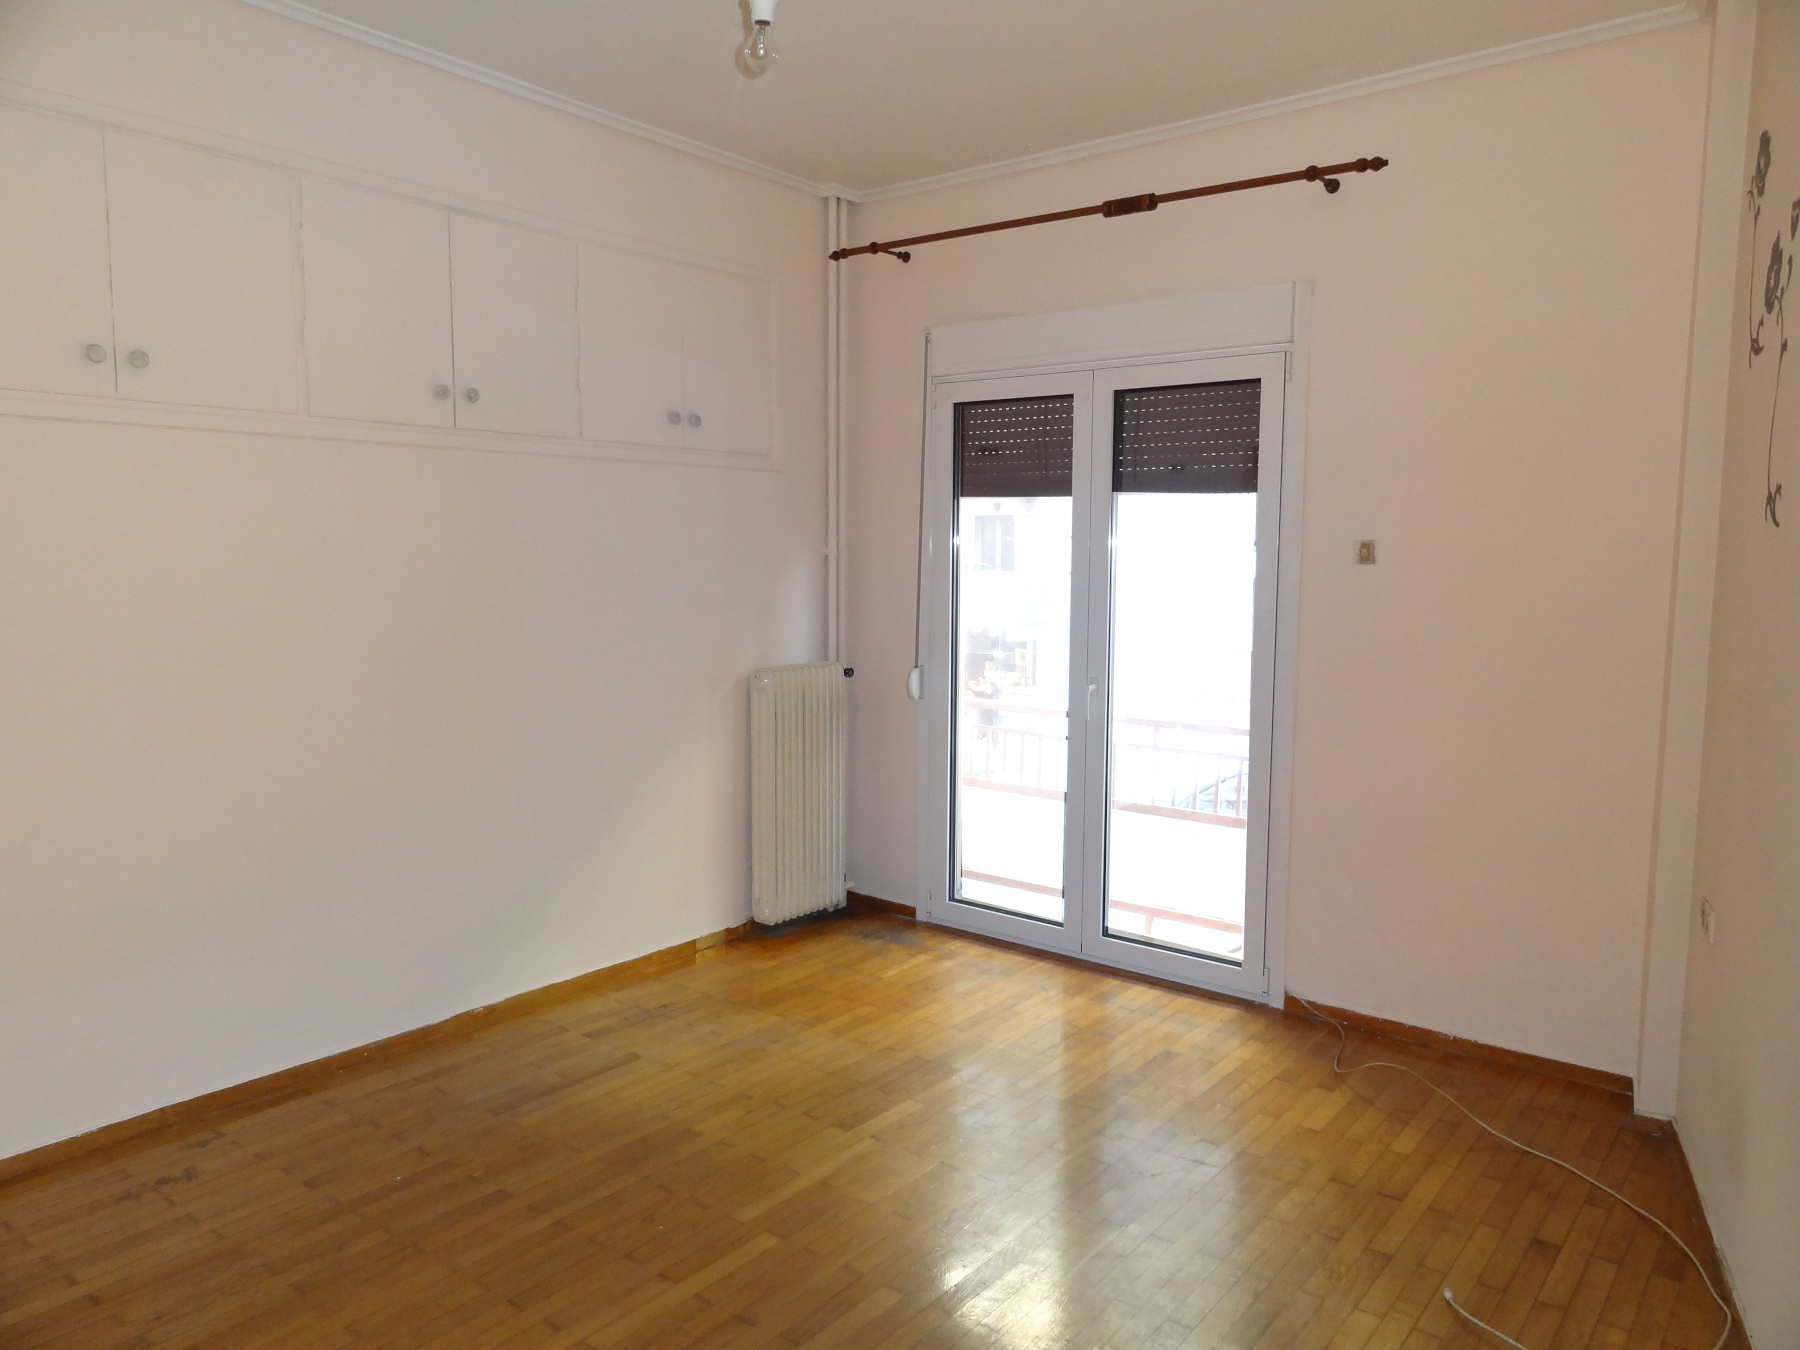 Bright 2 bedrooms apartment for rent, 86 sq.m. mezzanine in the center of Ioannina near Dodoni Avenue